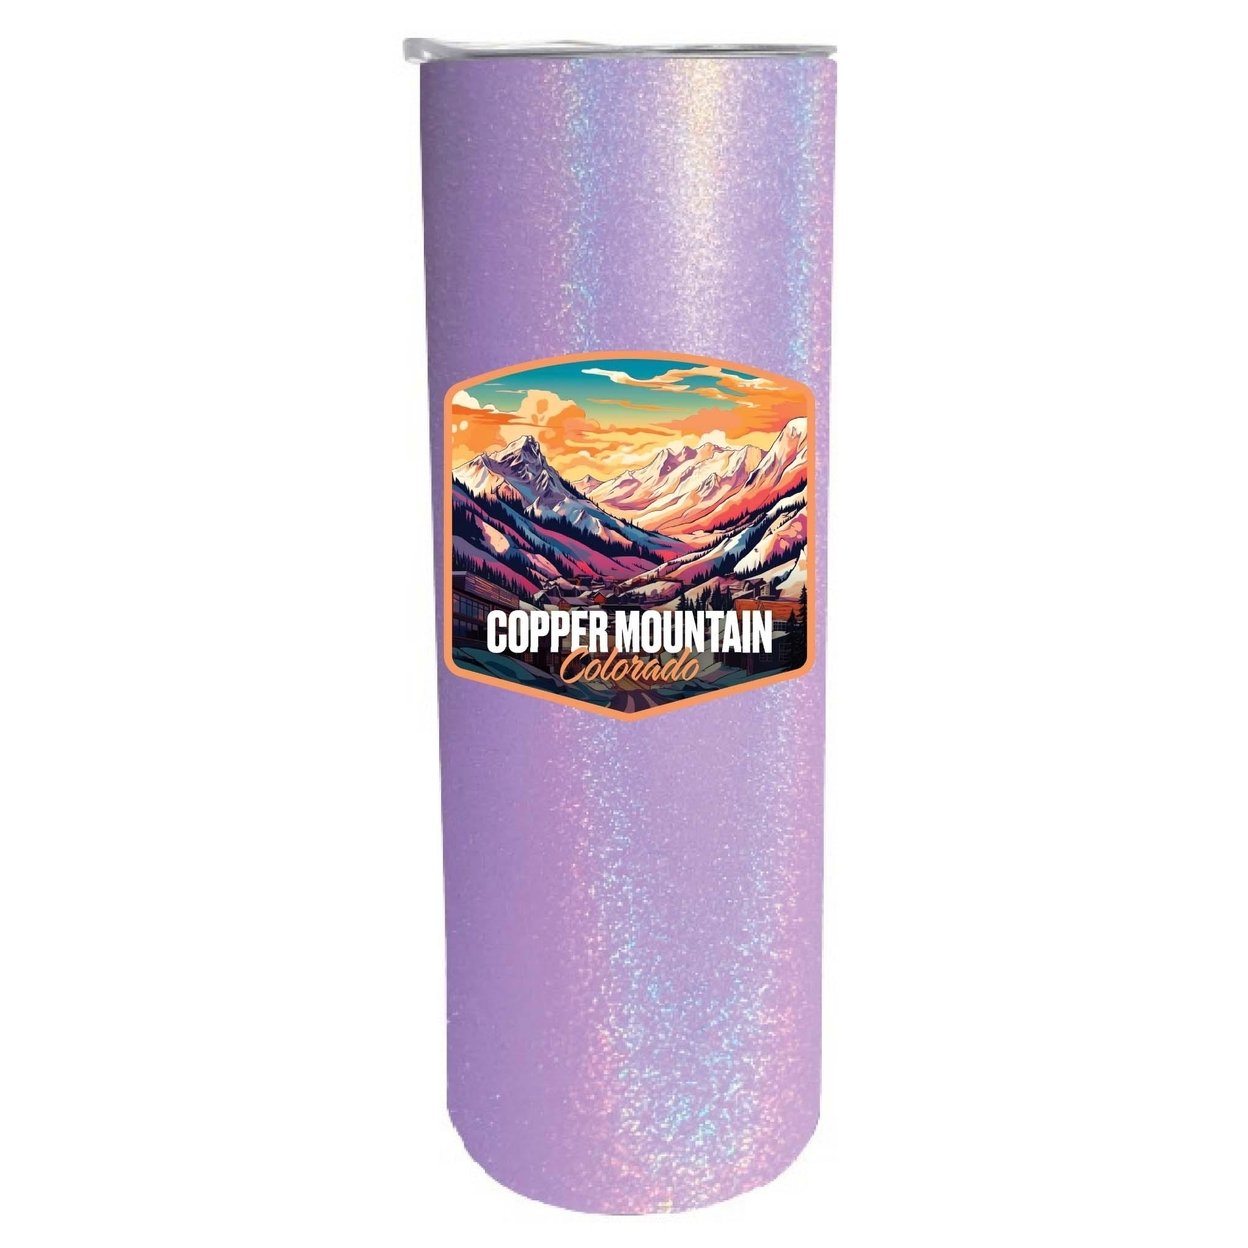 Copper Mountain A Souvenir 20 Oz Insulated Skinny Tumbler - Purple Glitter,,Single